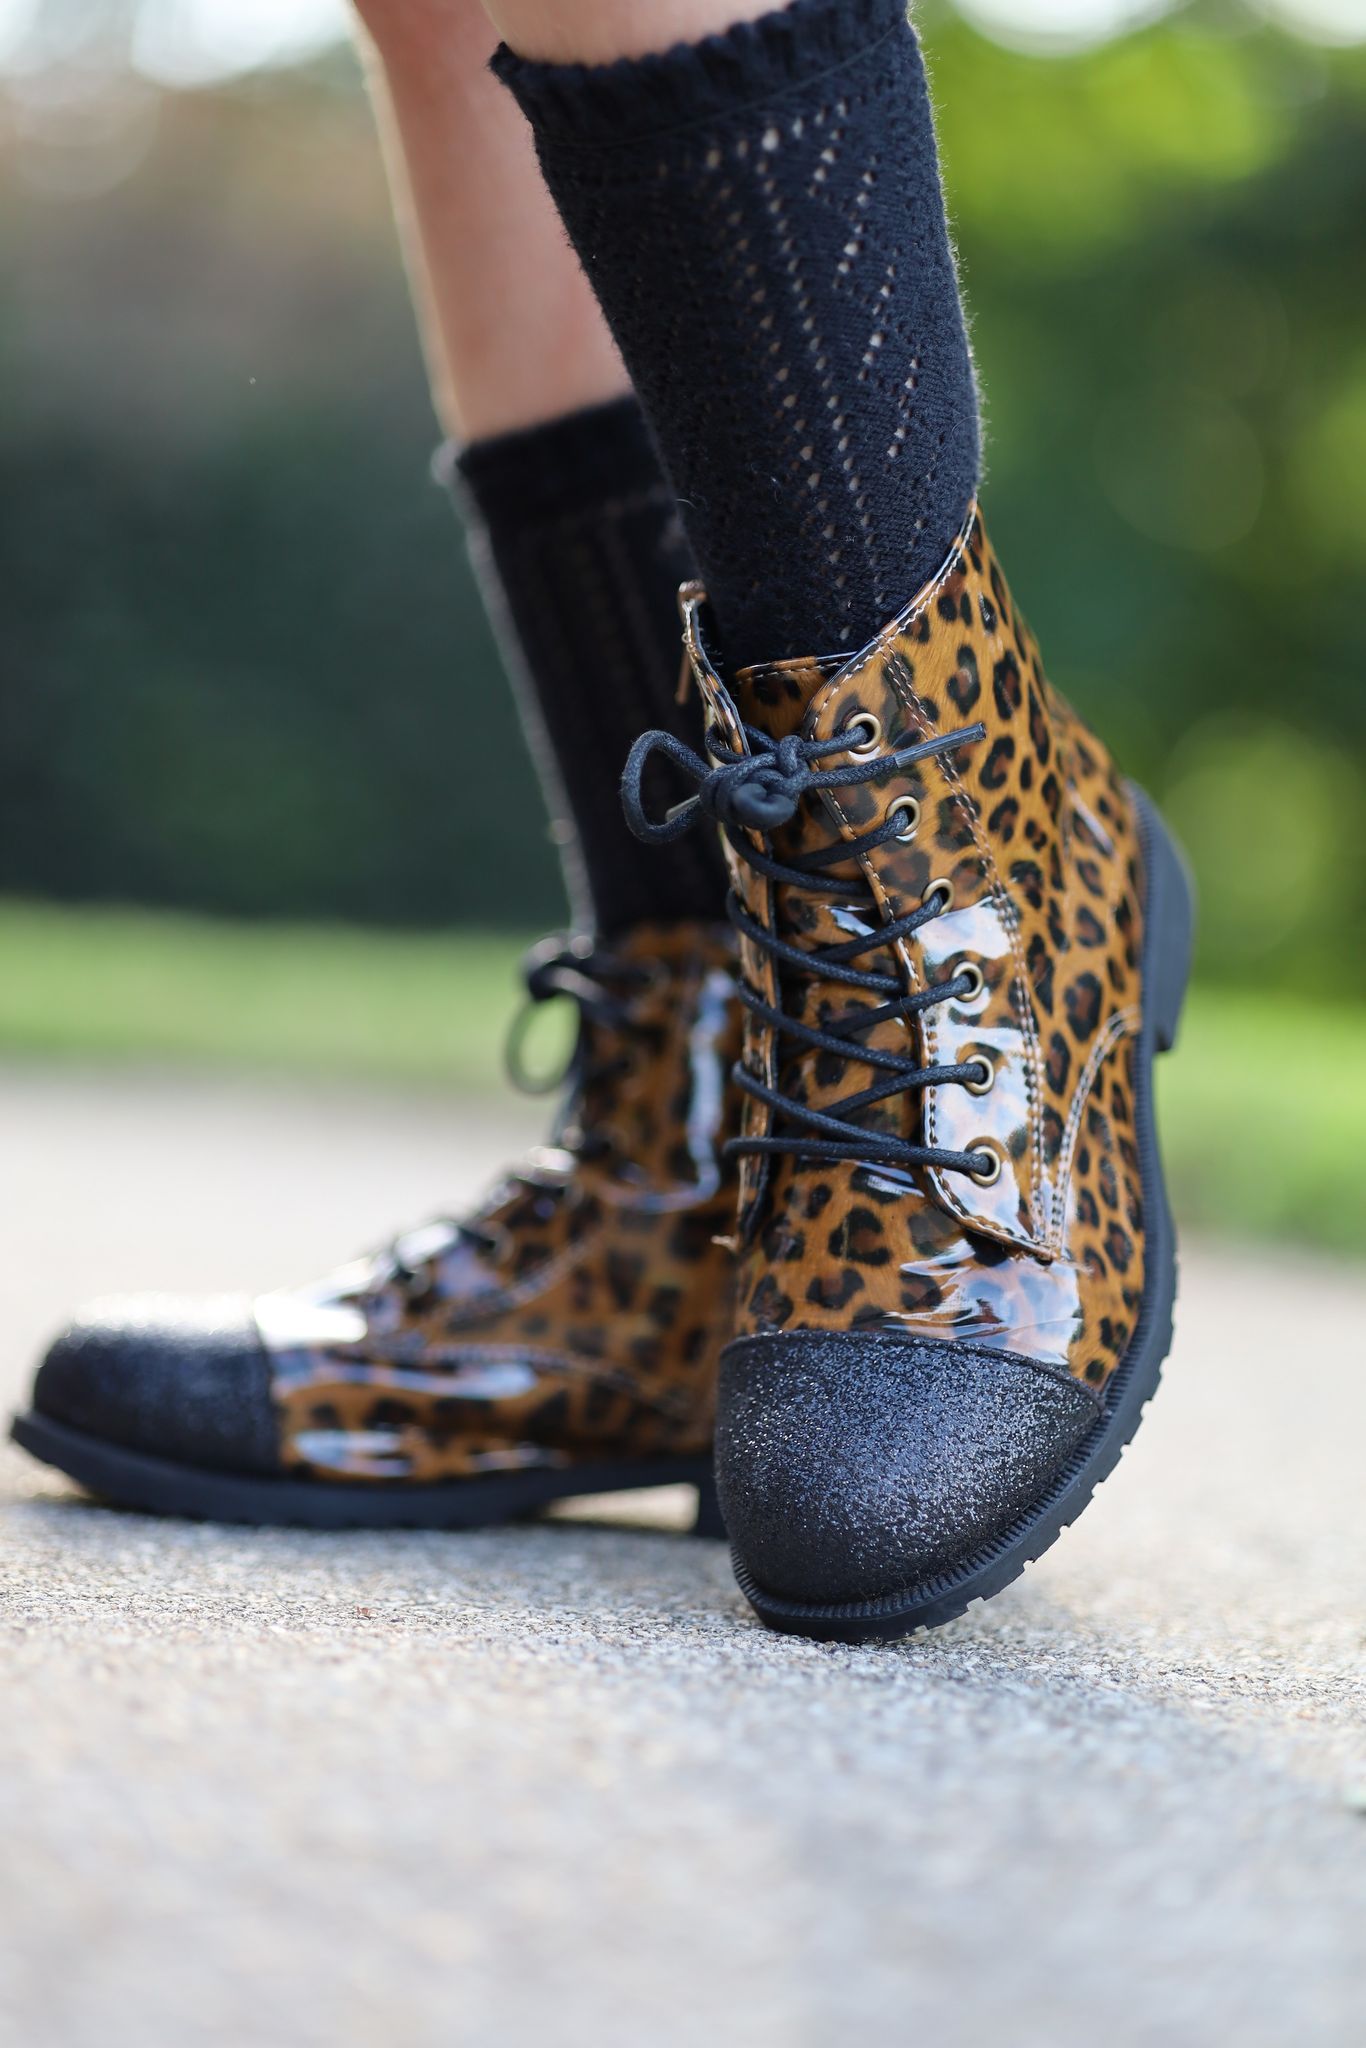 Leopard + Black Glitter Toe] Boots – The Spotted Phoenix, LLC